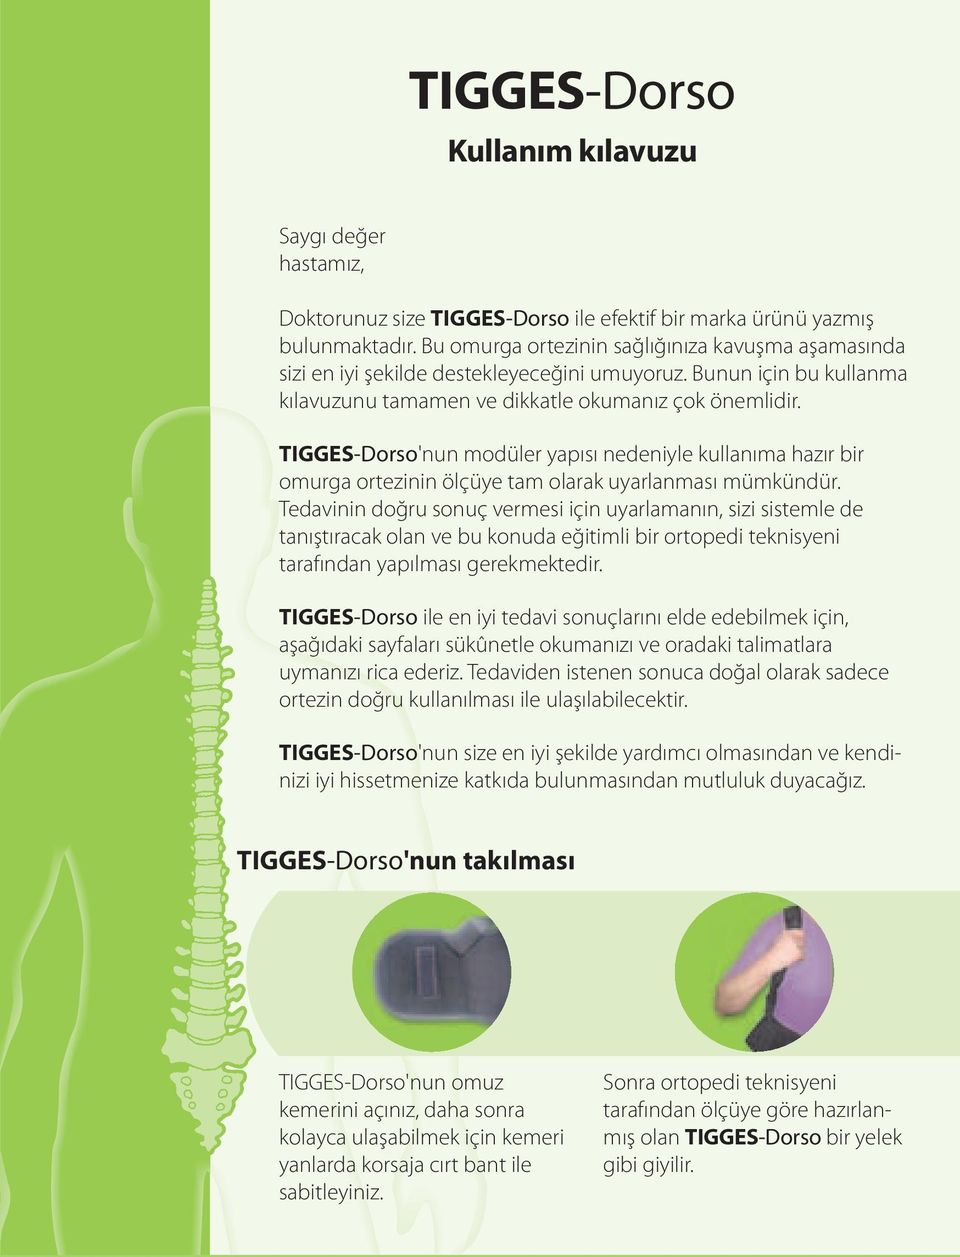 TIGGES-Dorso'nun modüler yapısı nedeniyle kullanıma hazır bir omurga ortezinin ölçüye tam olarak uyarlanması mümkündür.